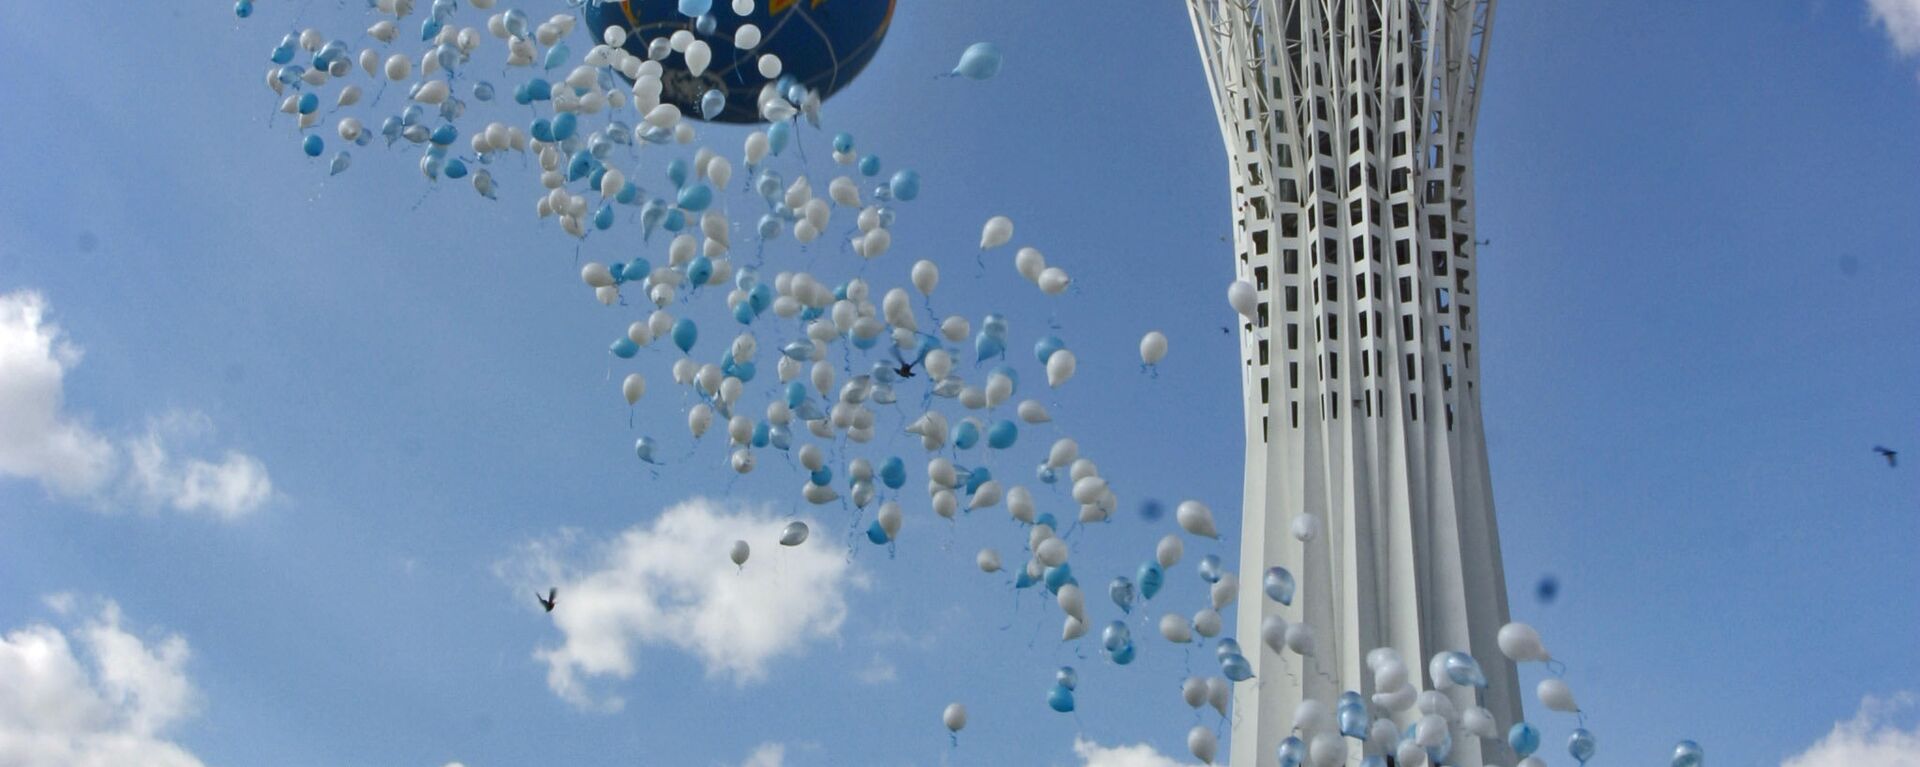 Воздушные шары у монумента Байтерек, архивное фото - Sputnik Казахстан, 1920, 07.02.2019